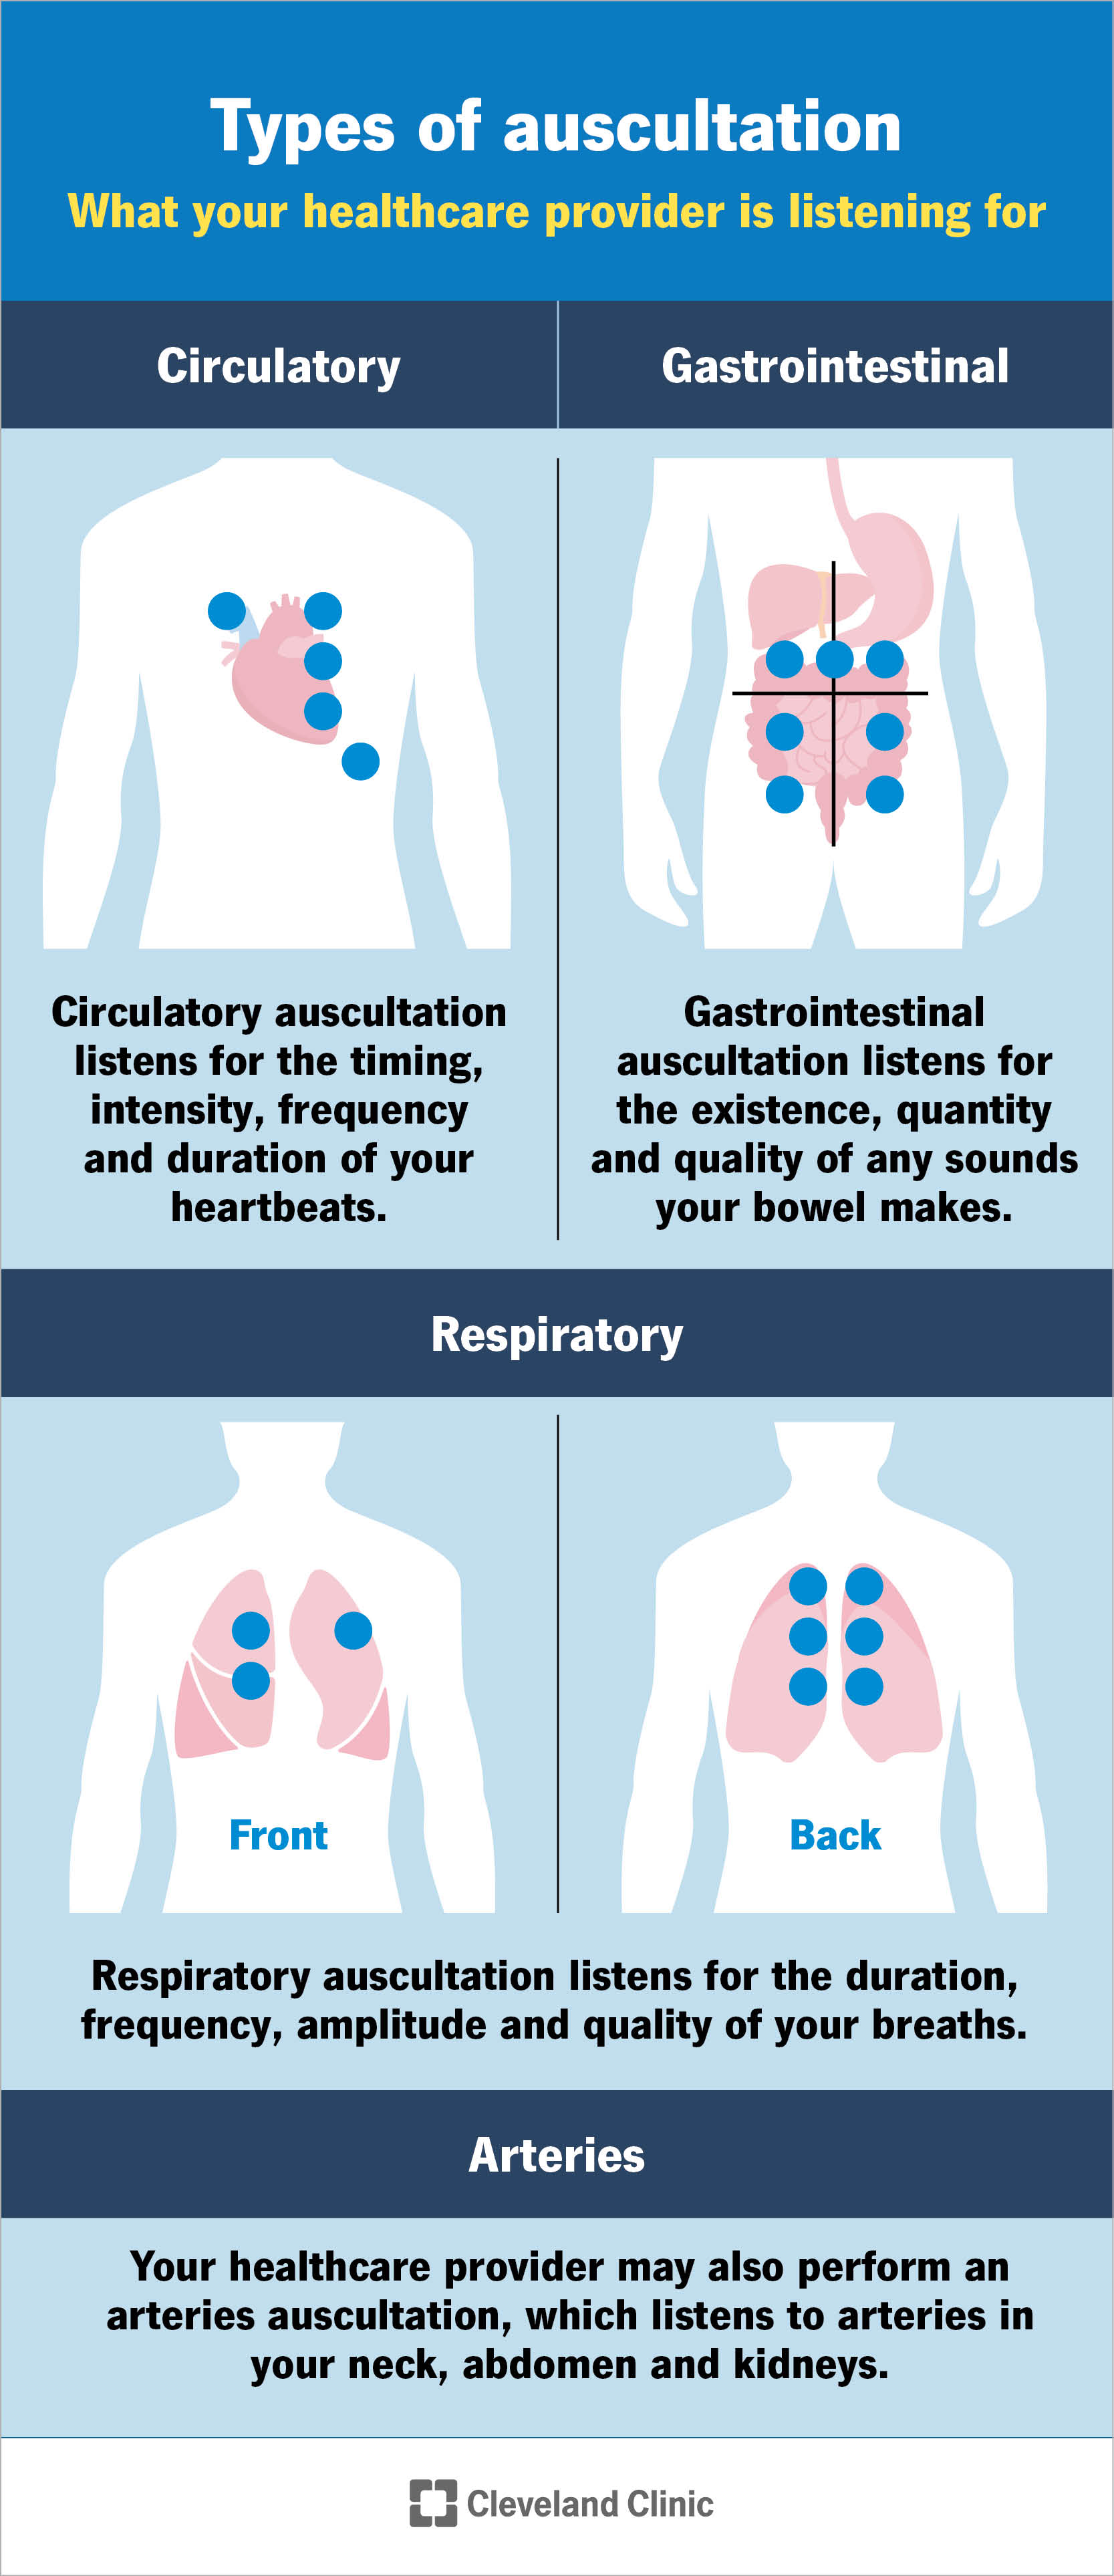 L'auscultazione ascolta i tuoi sistemi circolatorio, gastrointestinale e respiratorio, nonché le tue arterie.